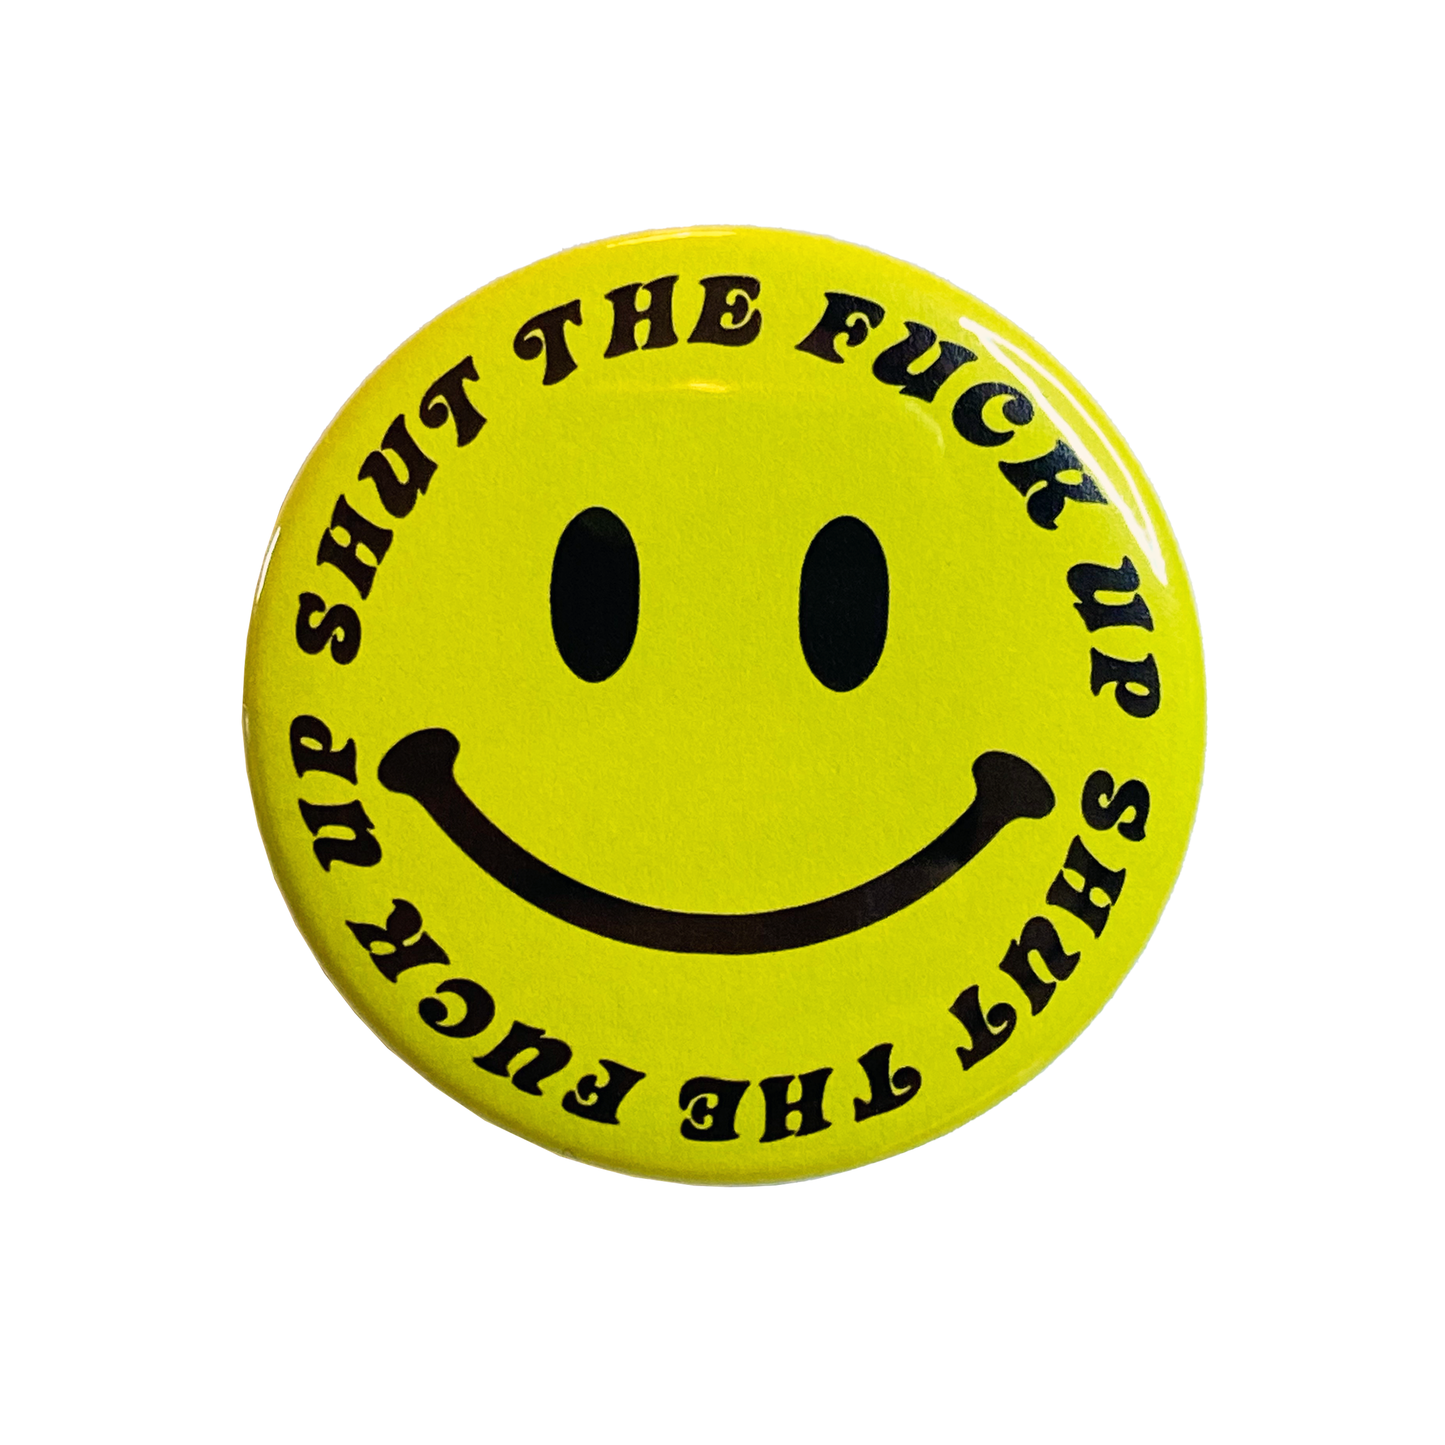 STFU Smiley Button